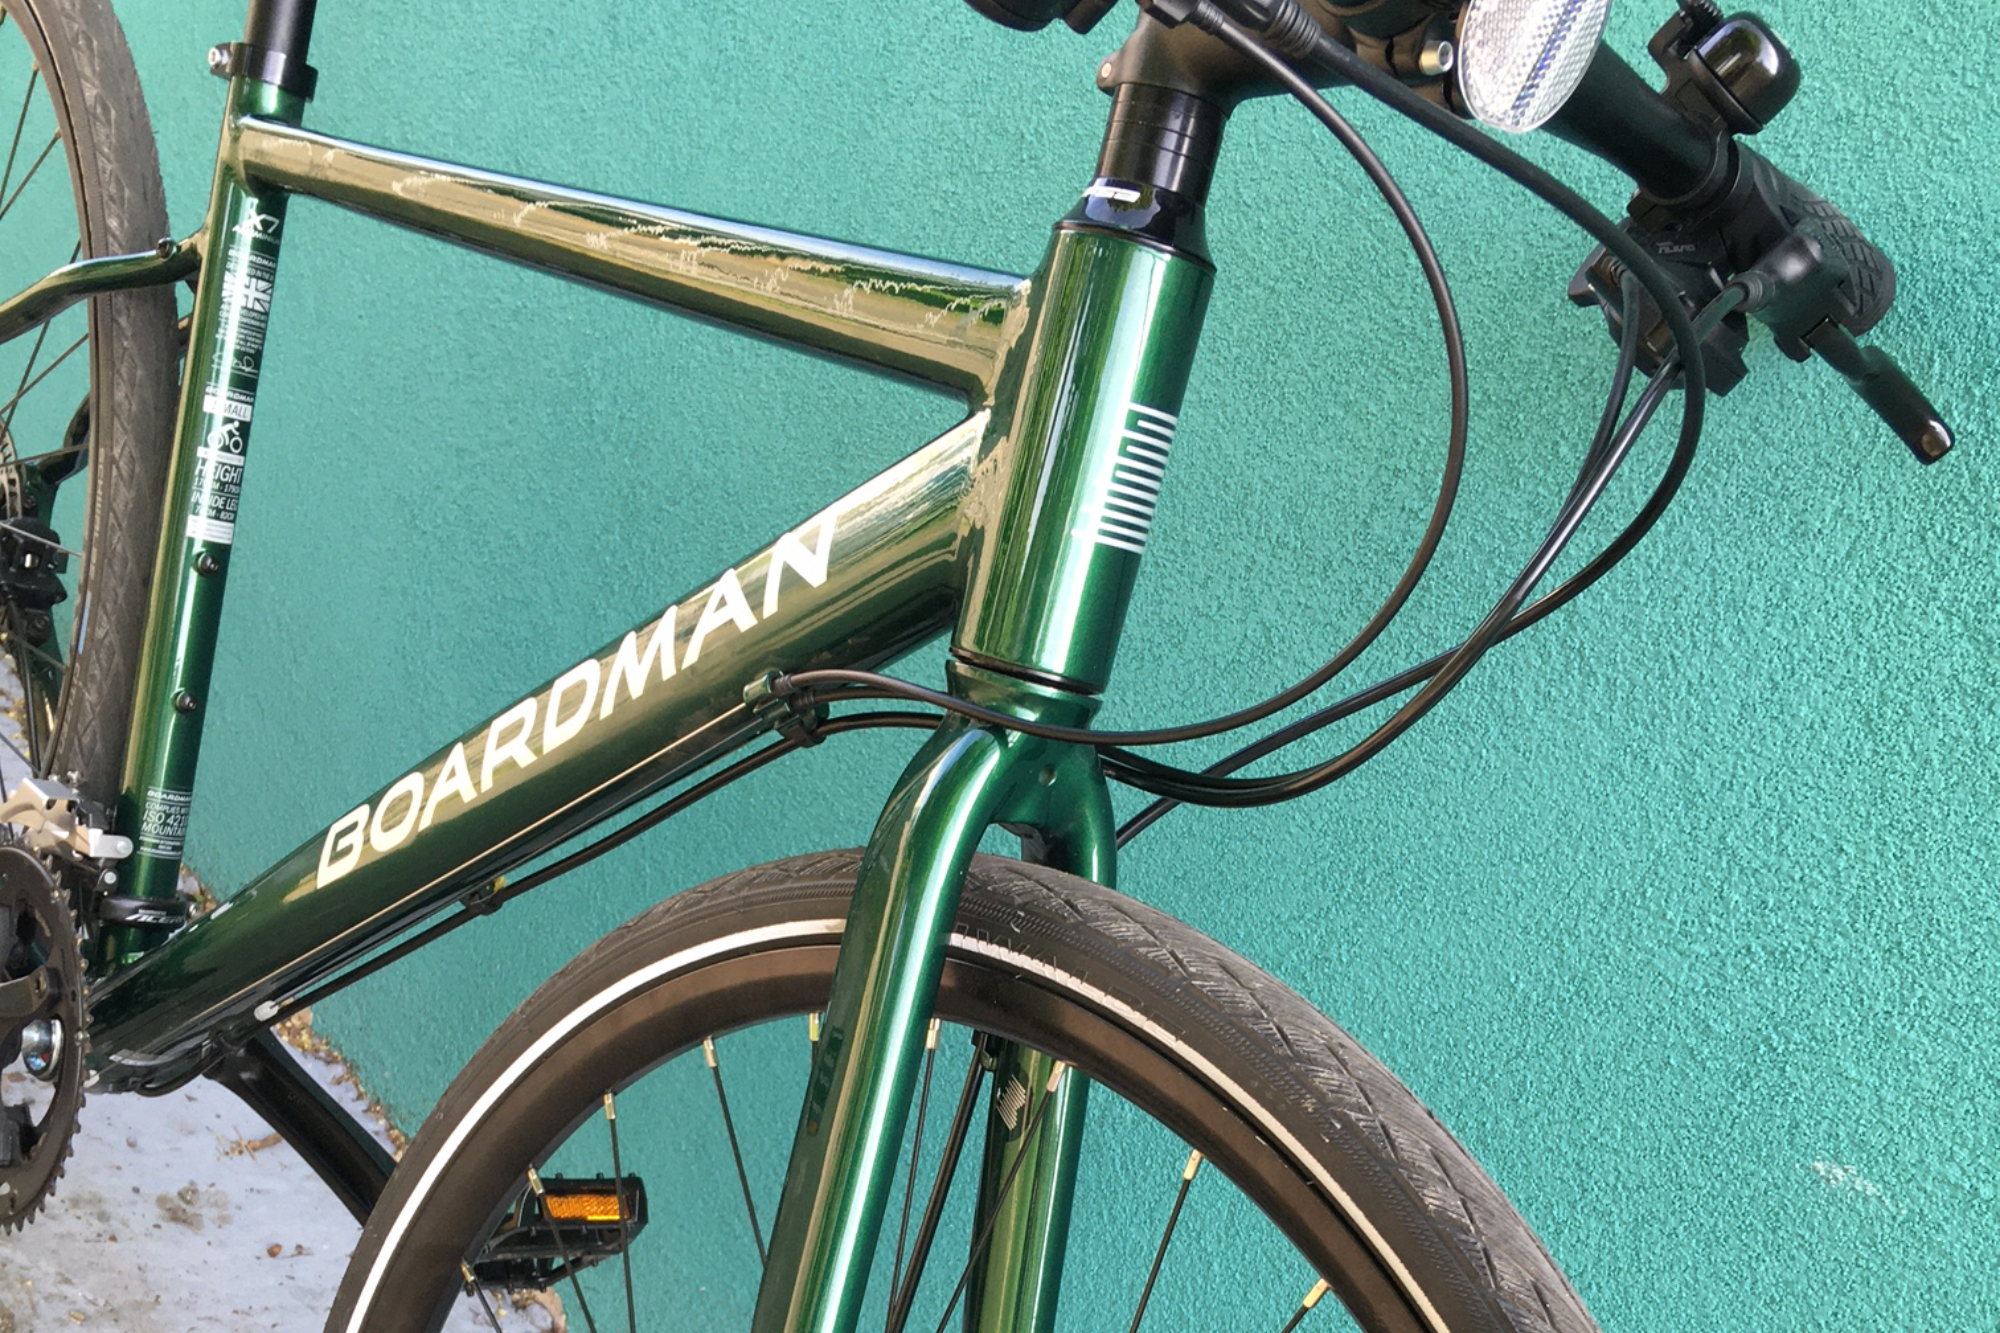 Detail of Boardman HYB 8 bike